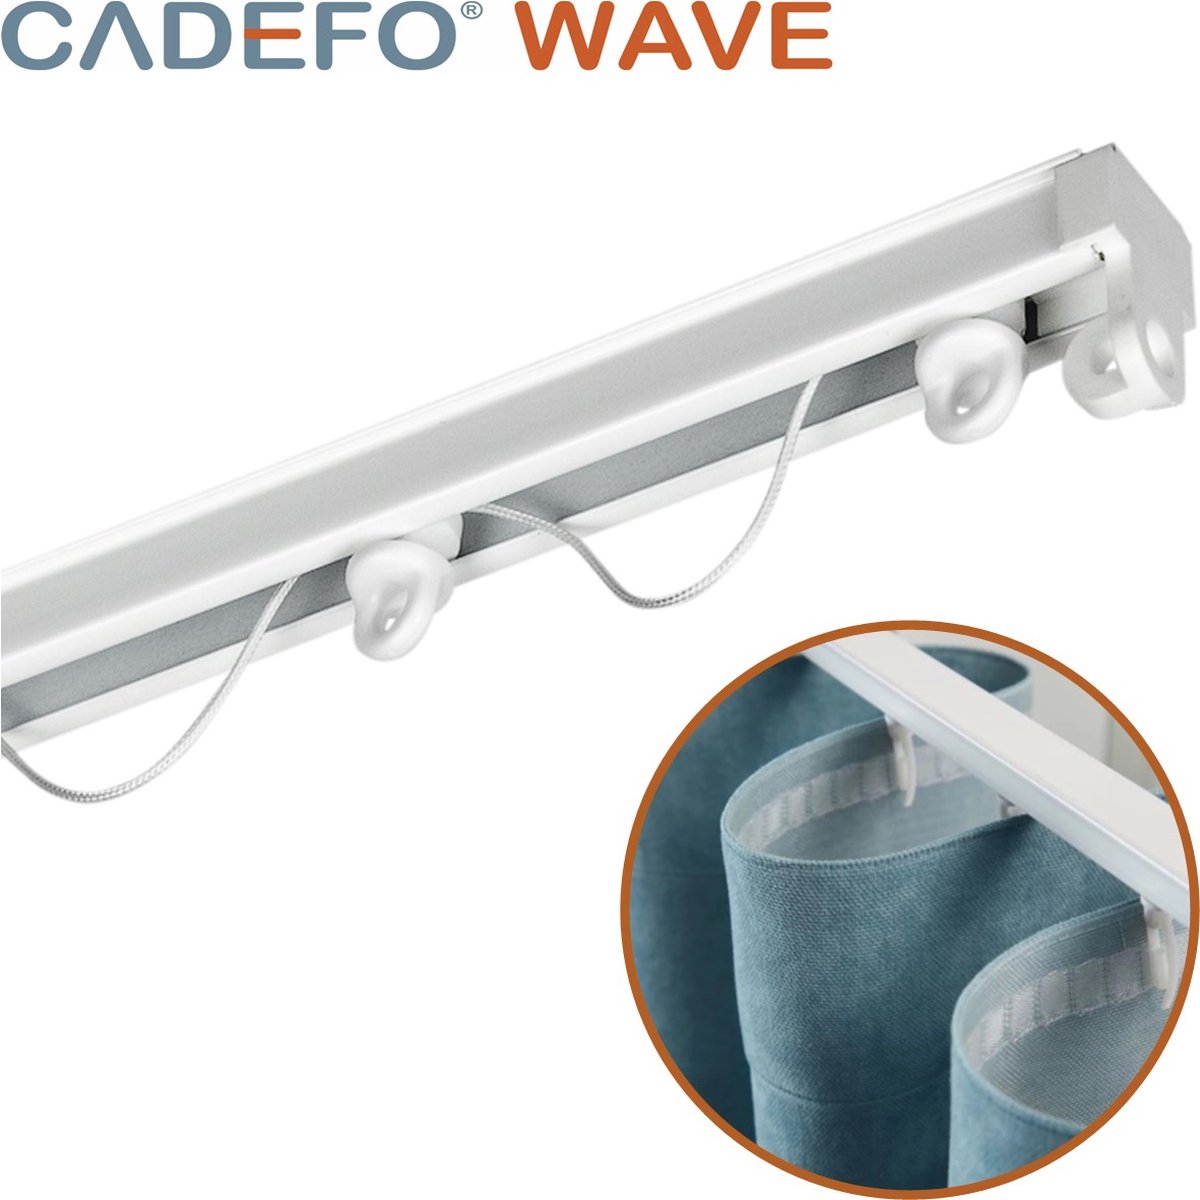 CADEFO WAVE (351 - 400 cm) Gordijnrails - Compleet op maat! - UIT 1 STUK - Leverbaar tot 6 meter - Plafondbevestiging - Lengte 388 cm